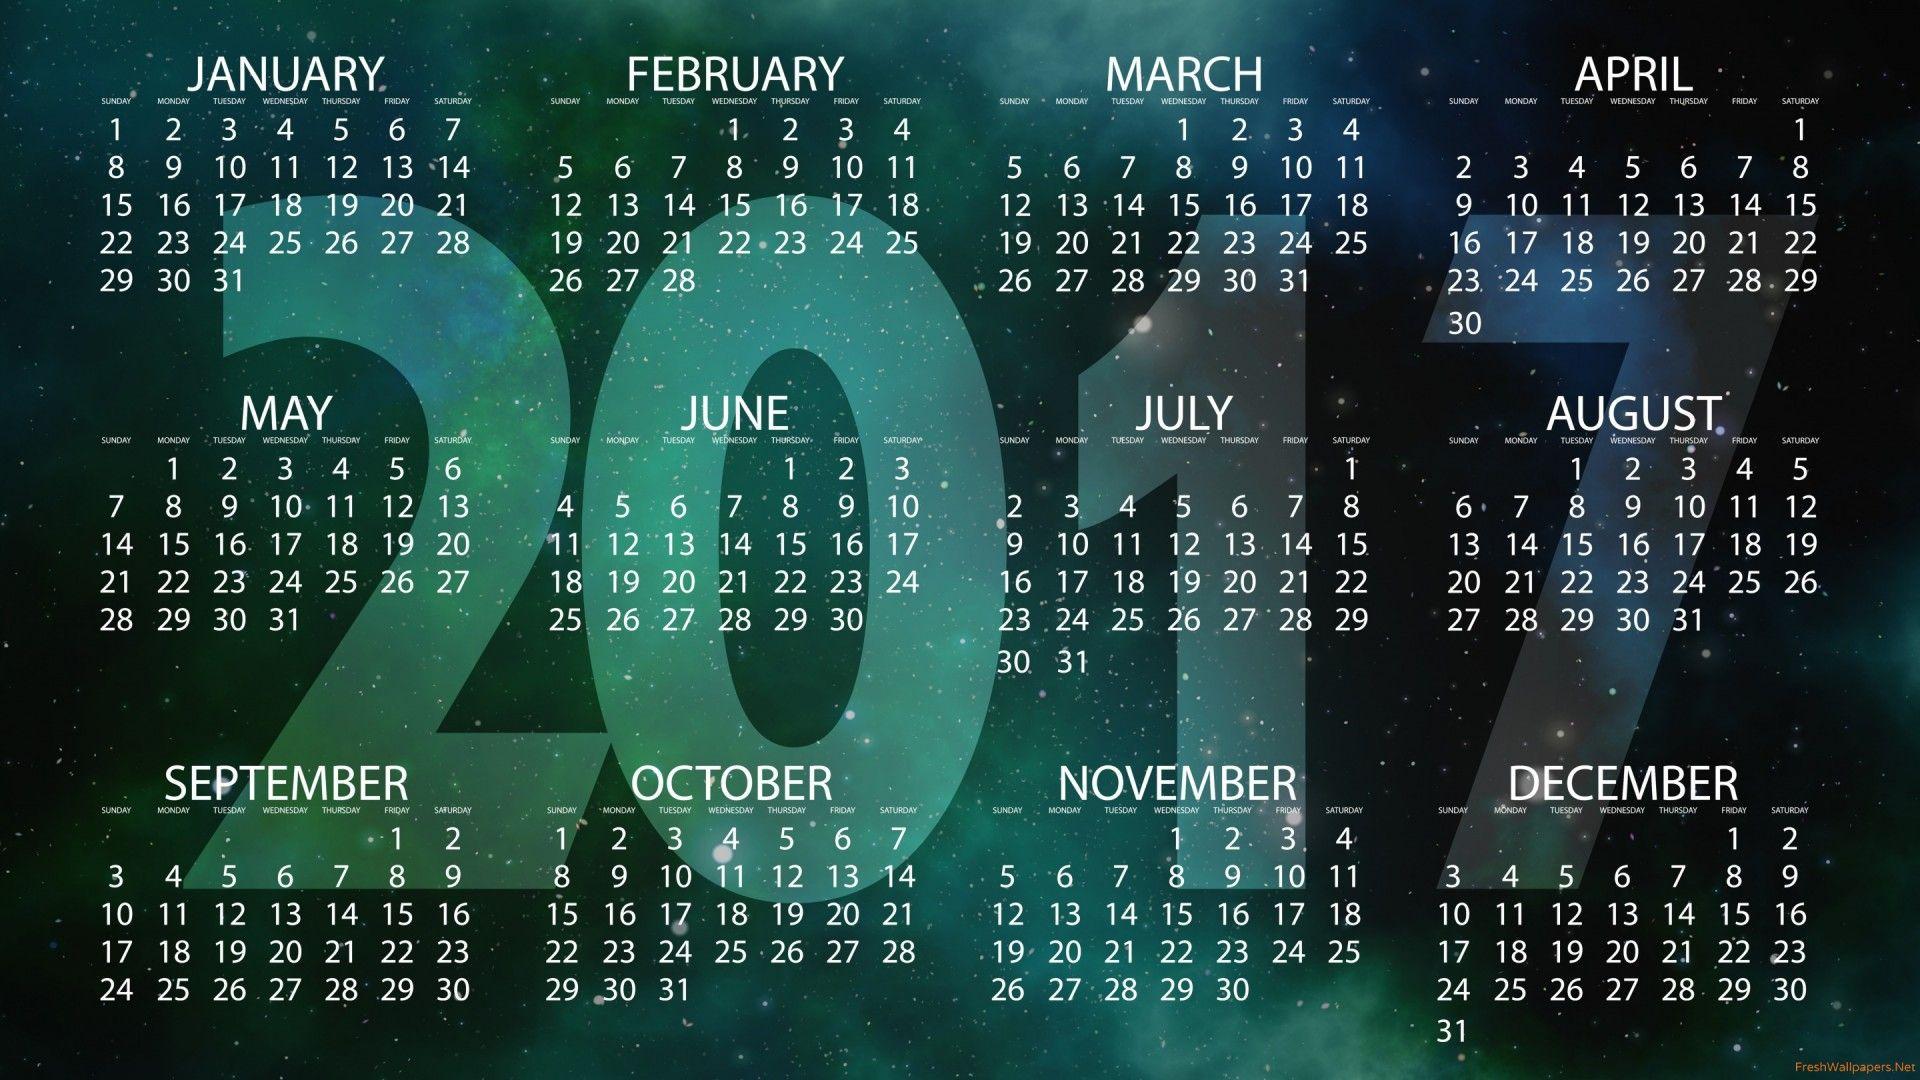 March calendar wallpaper 2017 (26 Wallpaper)